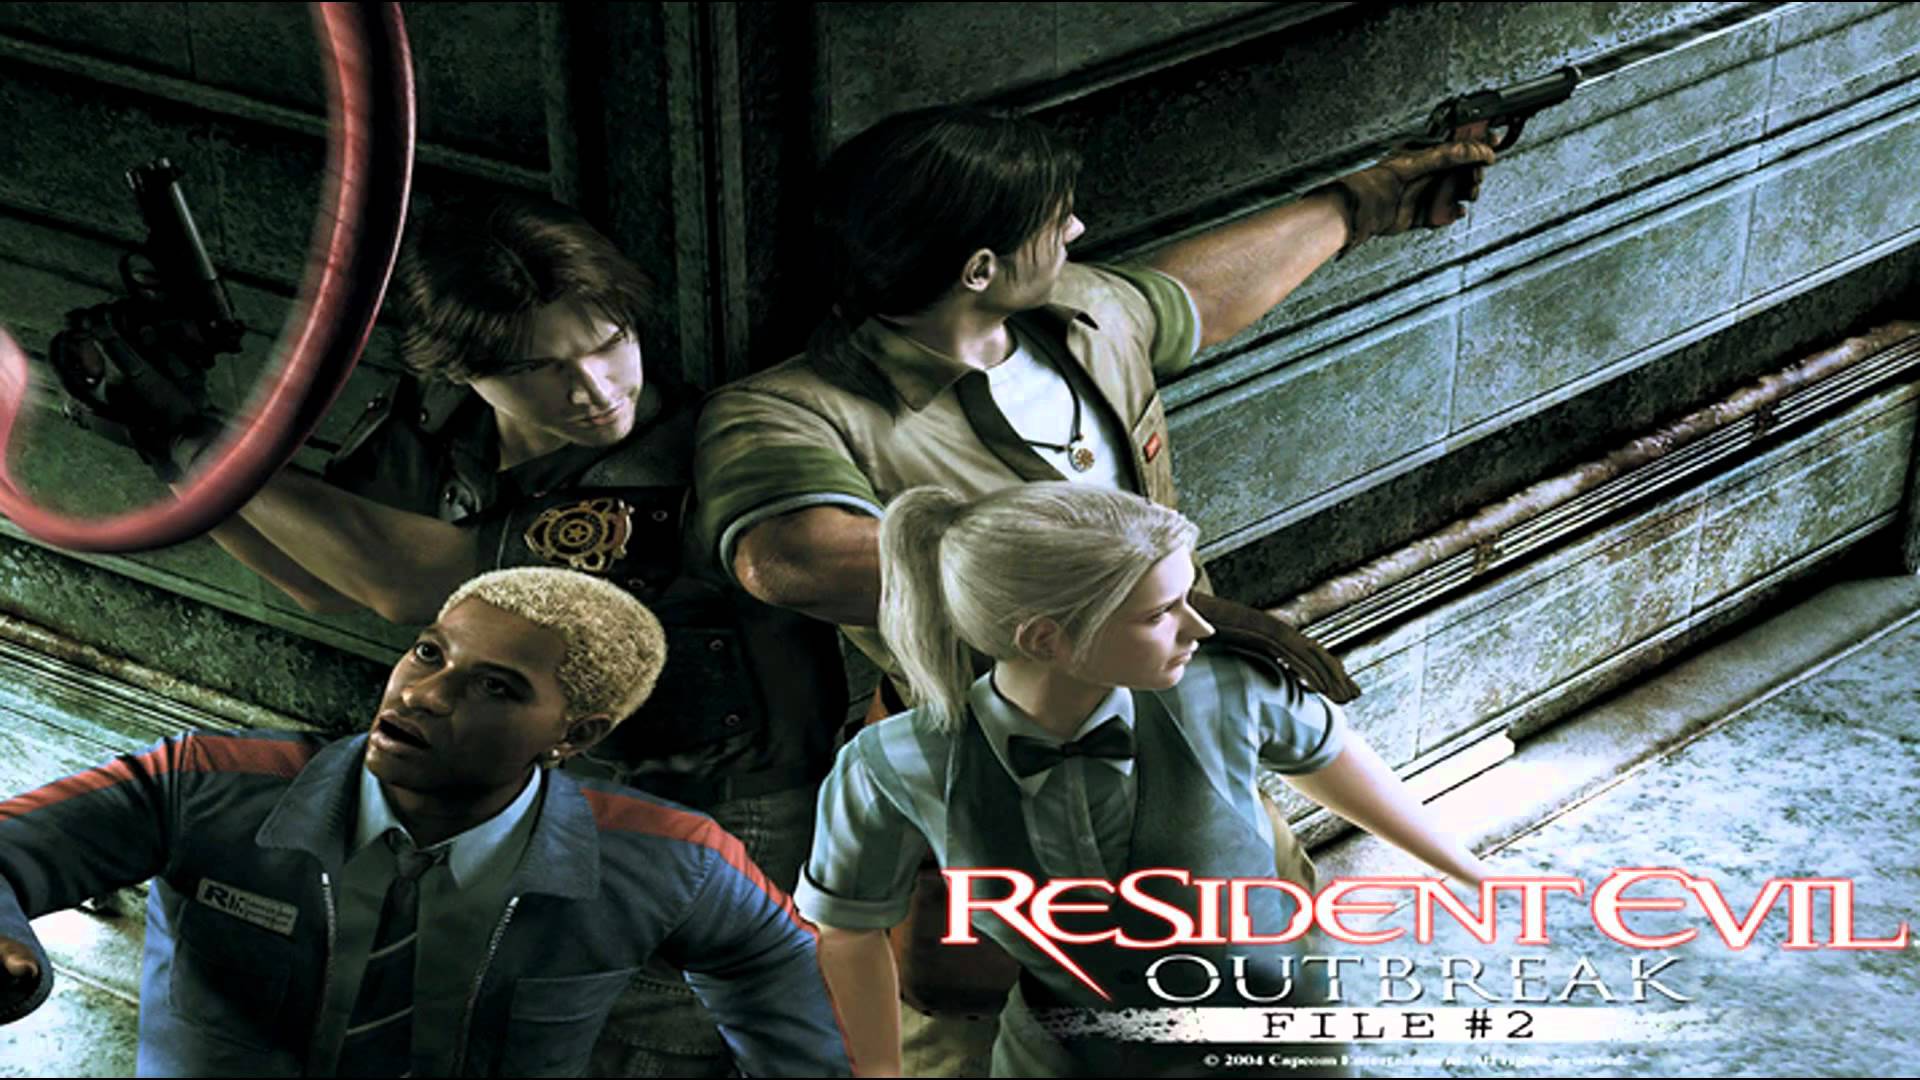 Resident Evil Outbreak #13